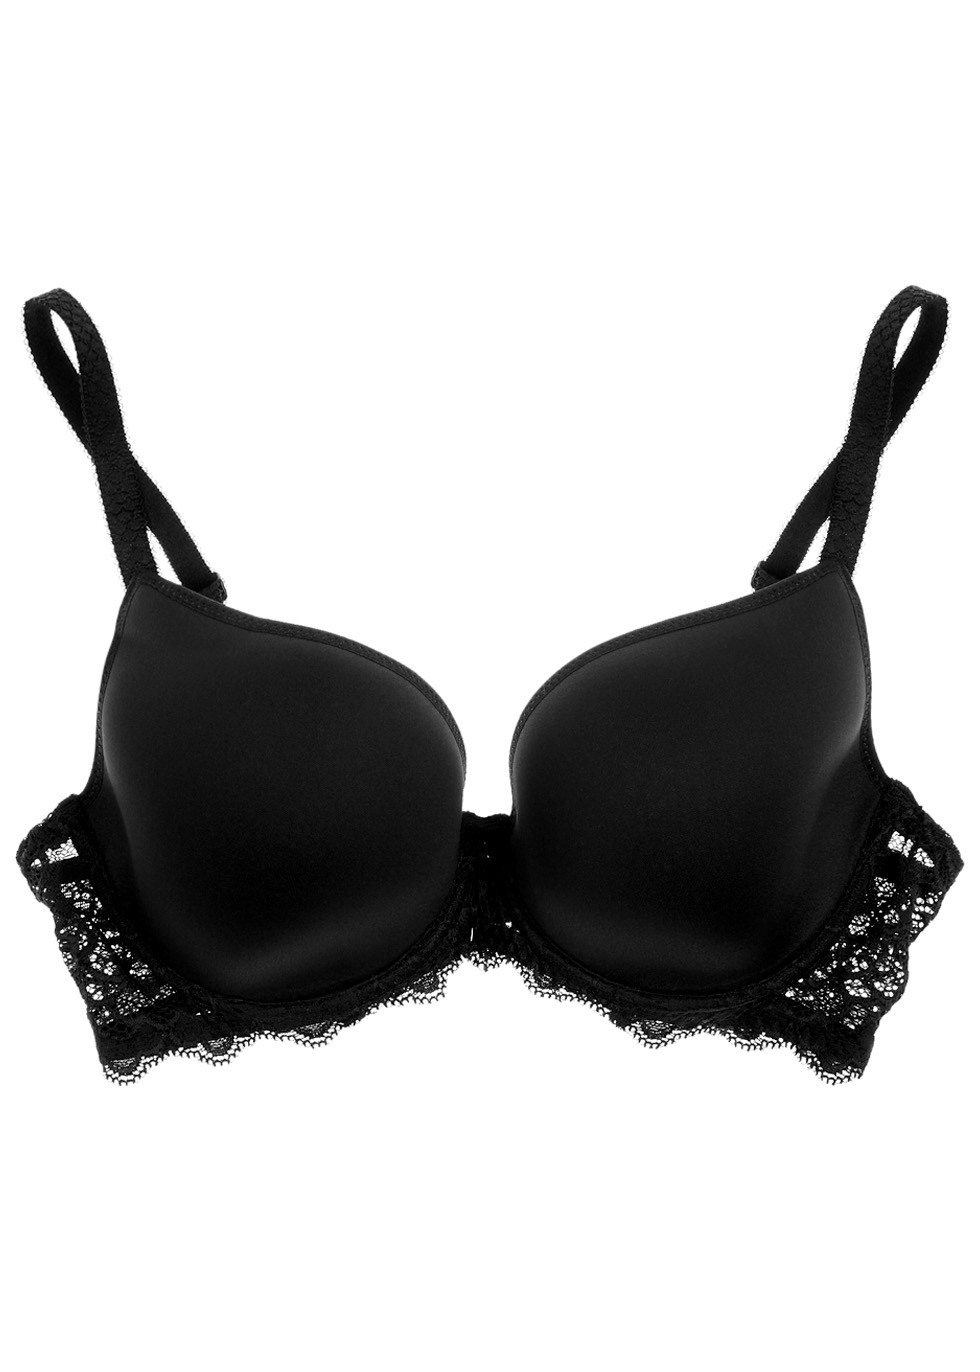 Caresse 3D black underwired bra Harvey Nichols Women Clothing Underwear Bras Underwired Bras 